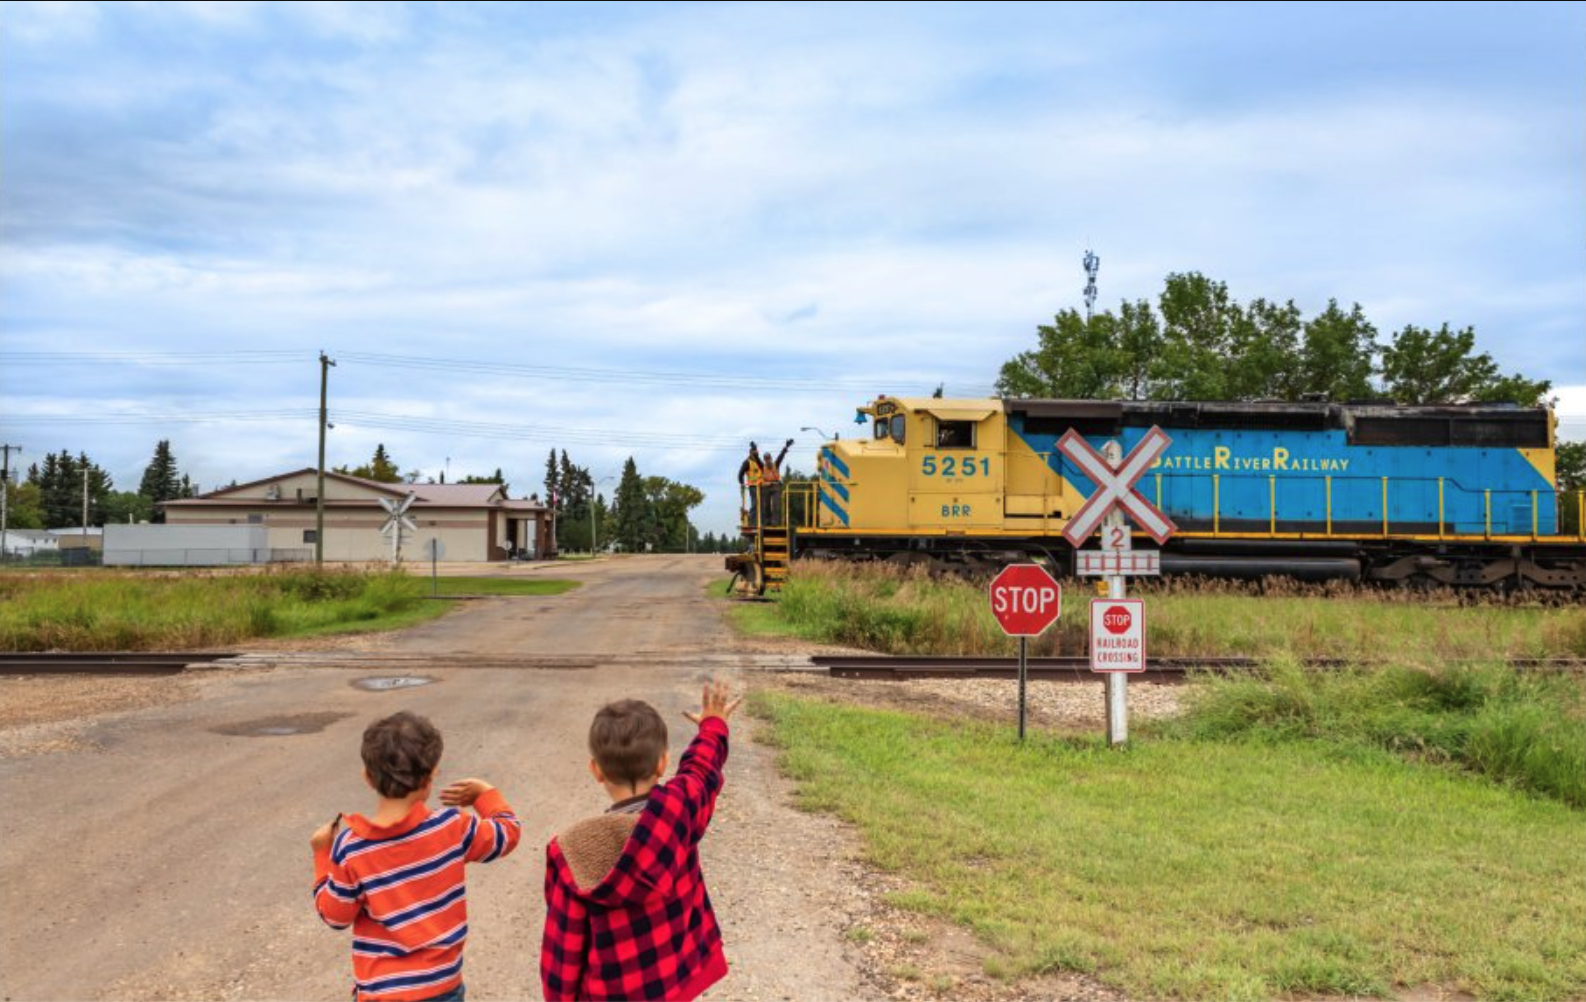 Battle River Railway Co-op kids waving